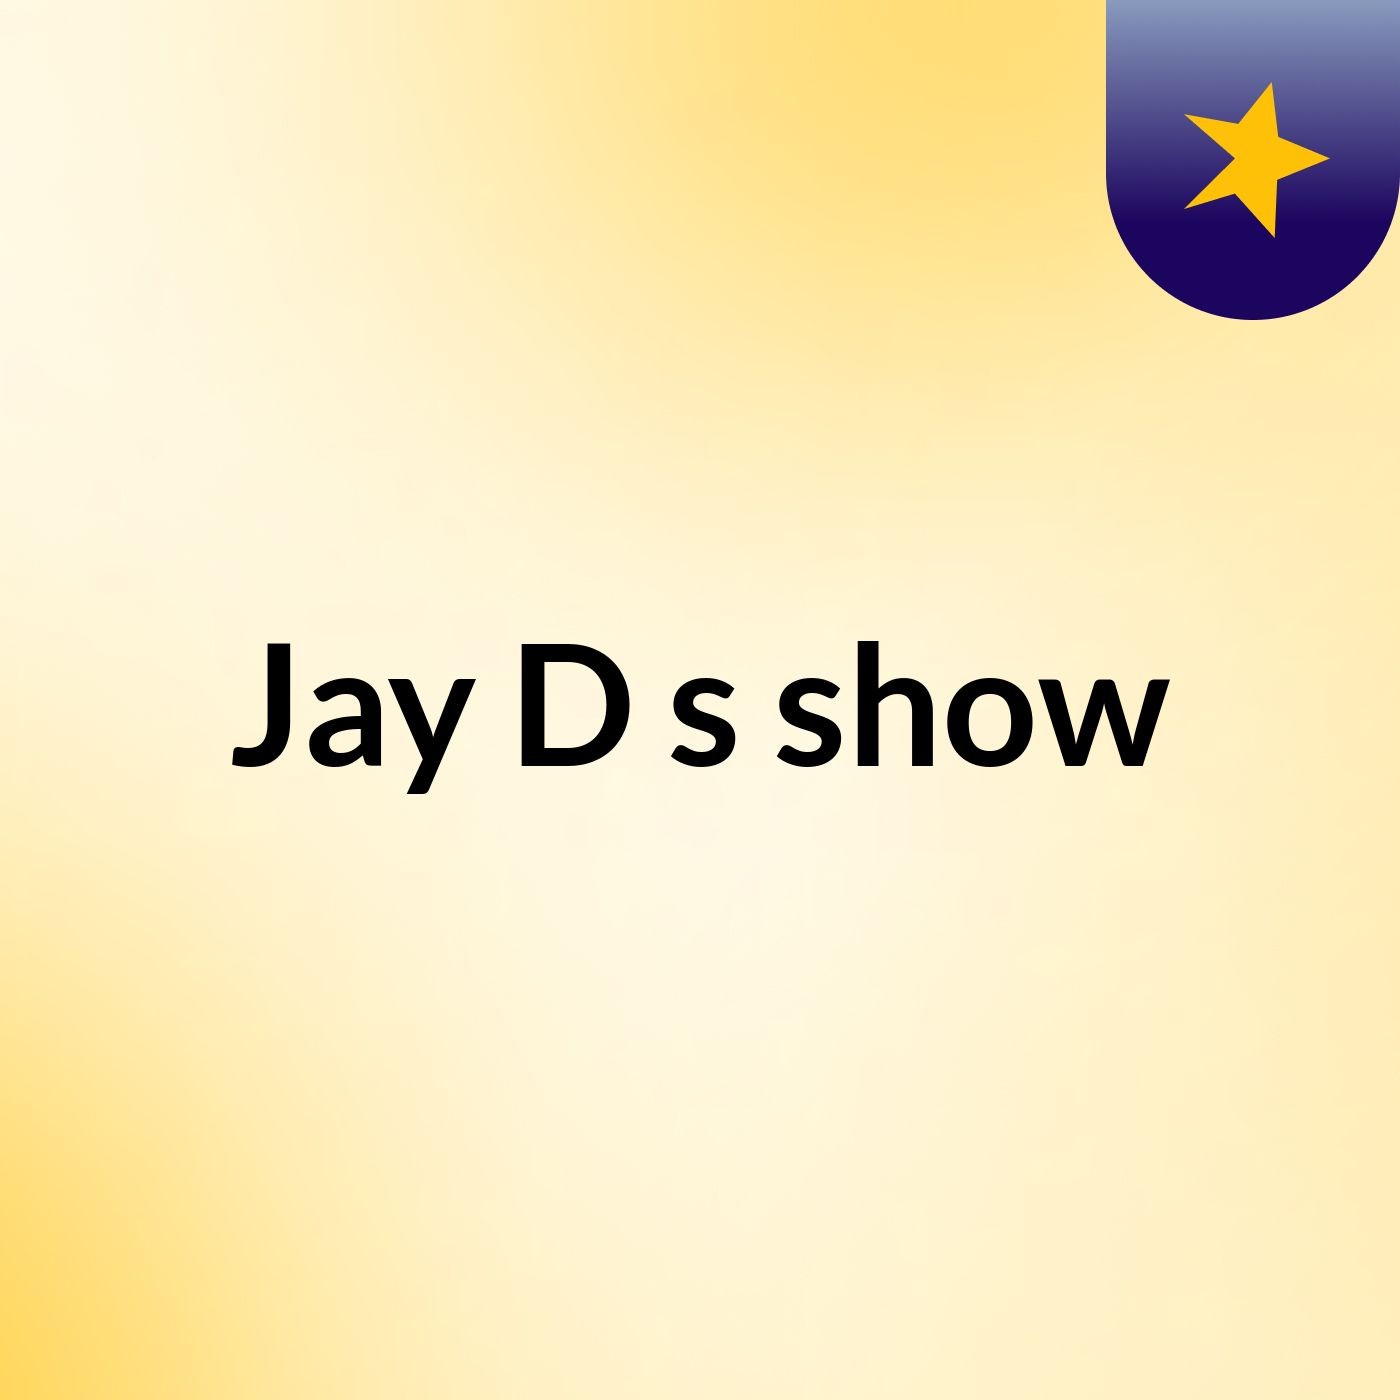 Jay D's show